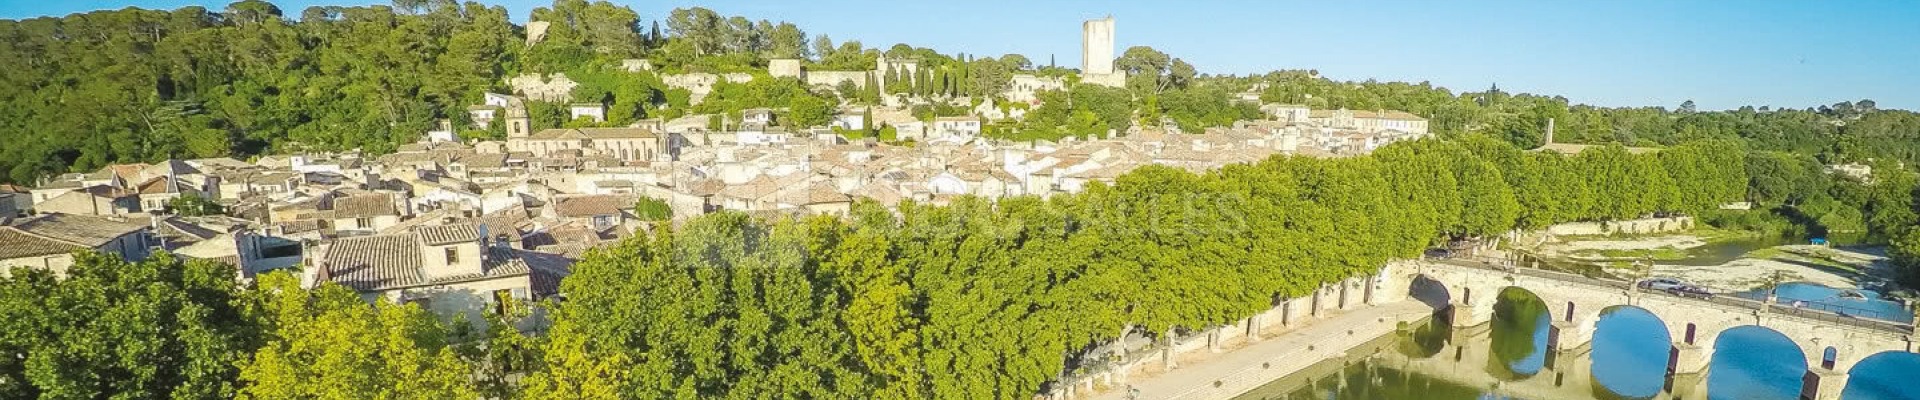 Sommières, cité médiévale de caractère idéalement située entre Nîmes et Montpellier